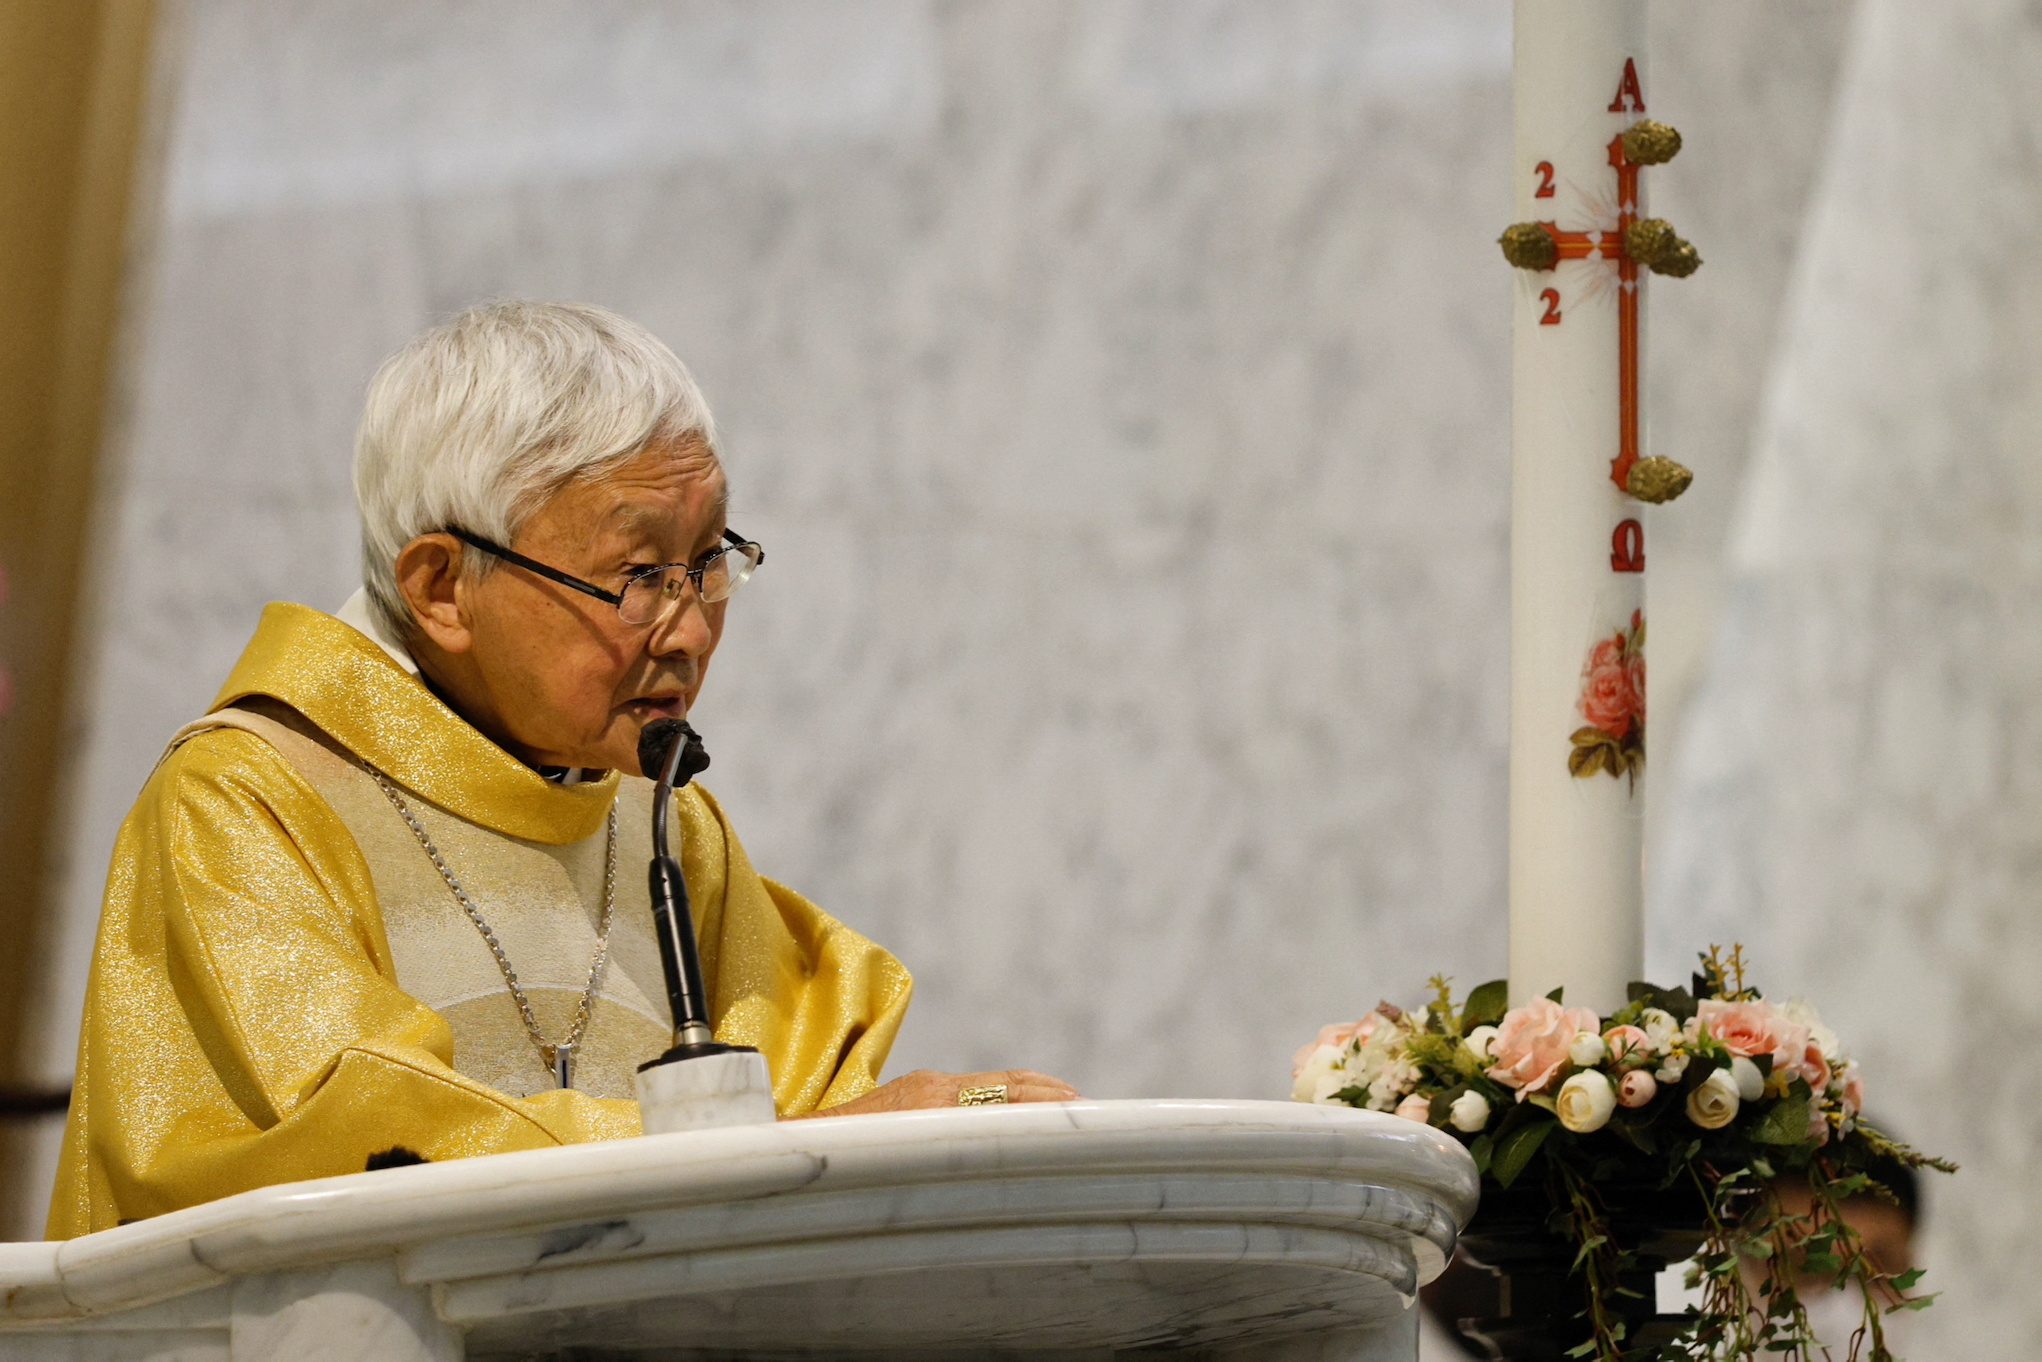 Hong Kong Catholic cardinal criticizes China deal after national security arrest